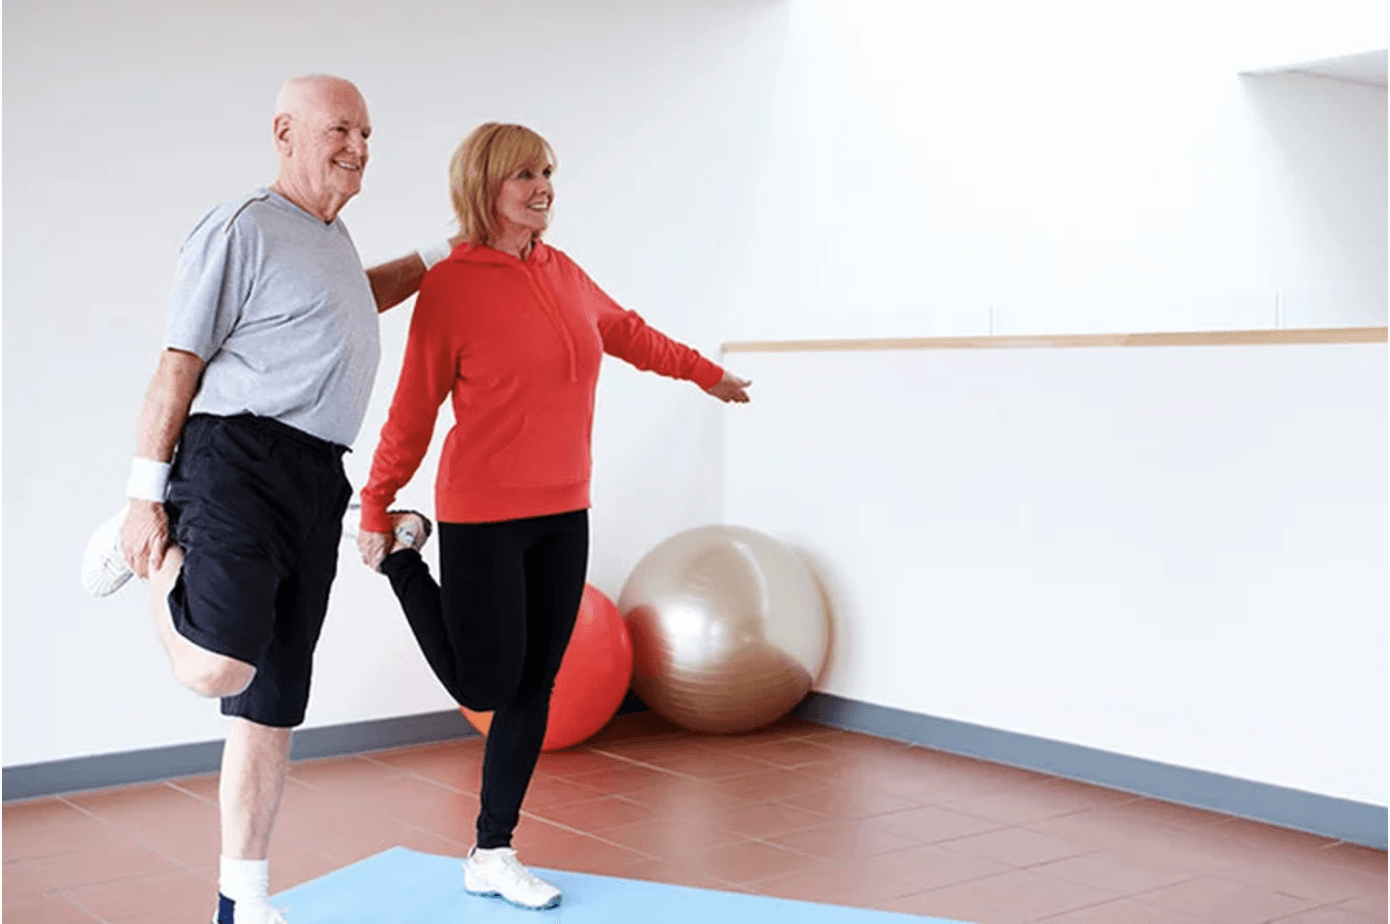 balance exercise for elderly